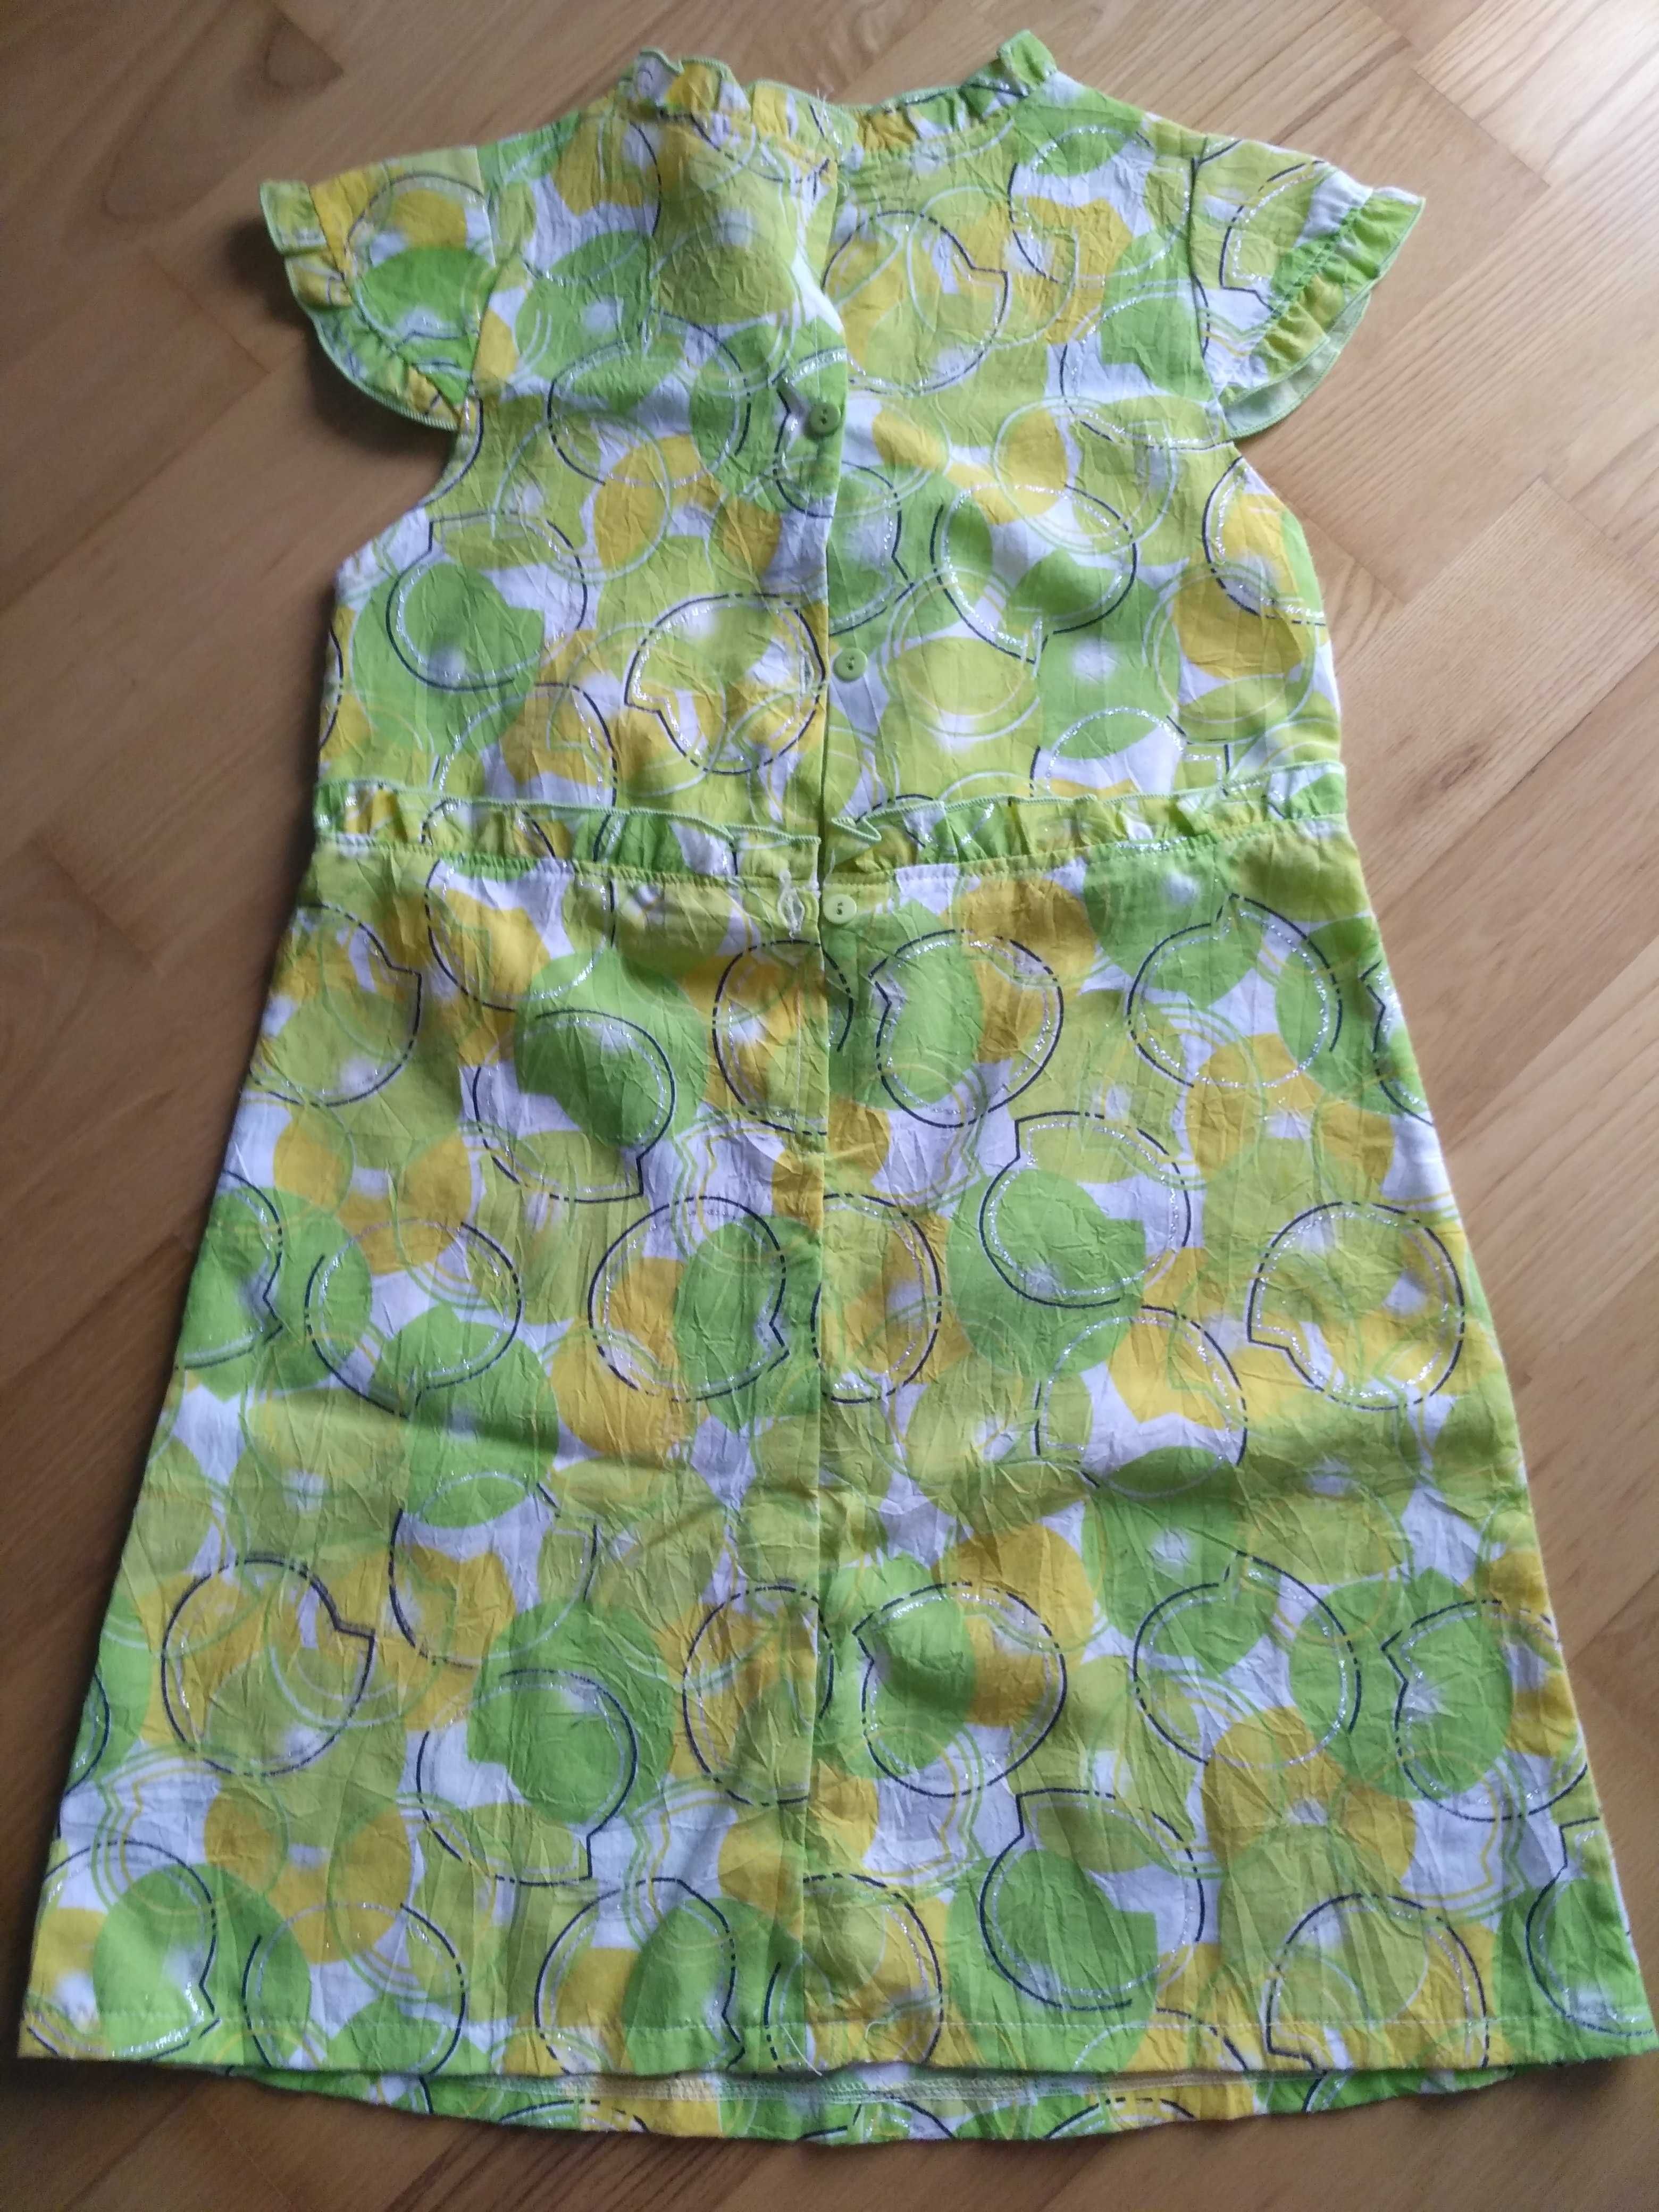 Cienka letnia sukienka 110/116 suknia żółta zielona błyszcząca